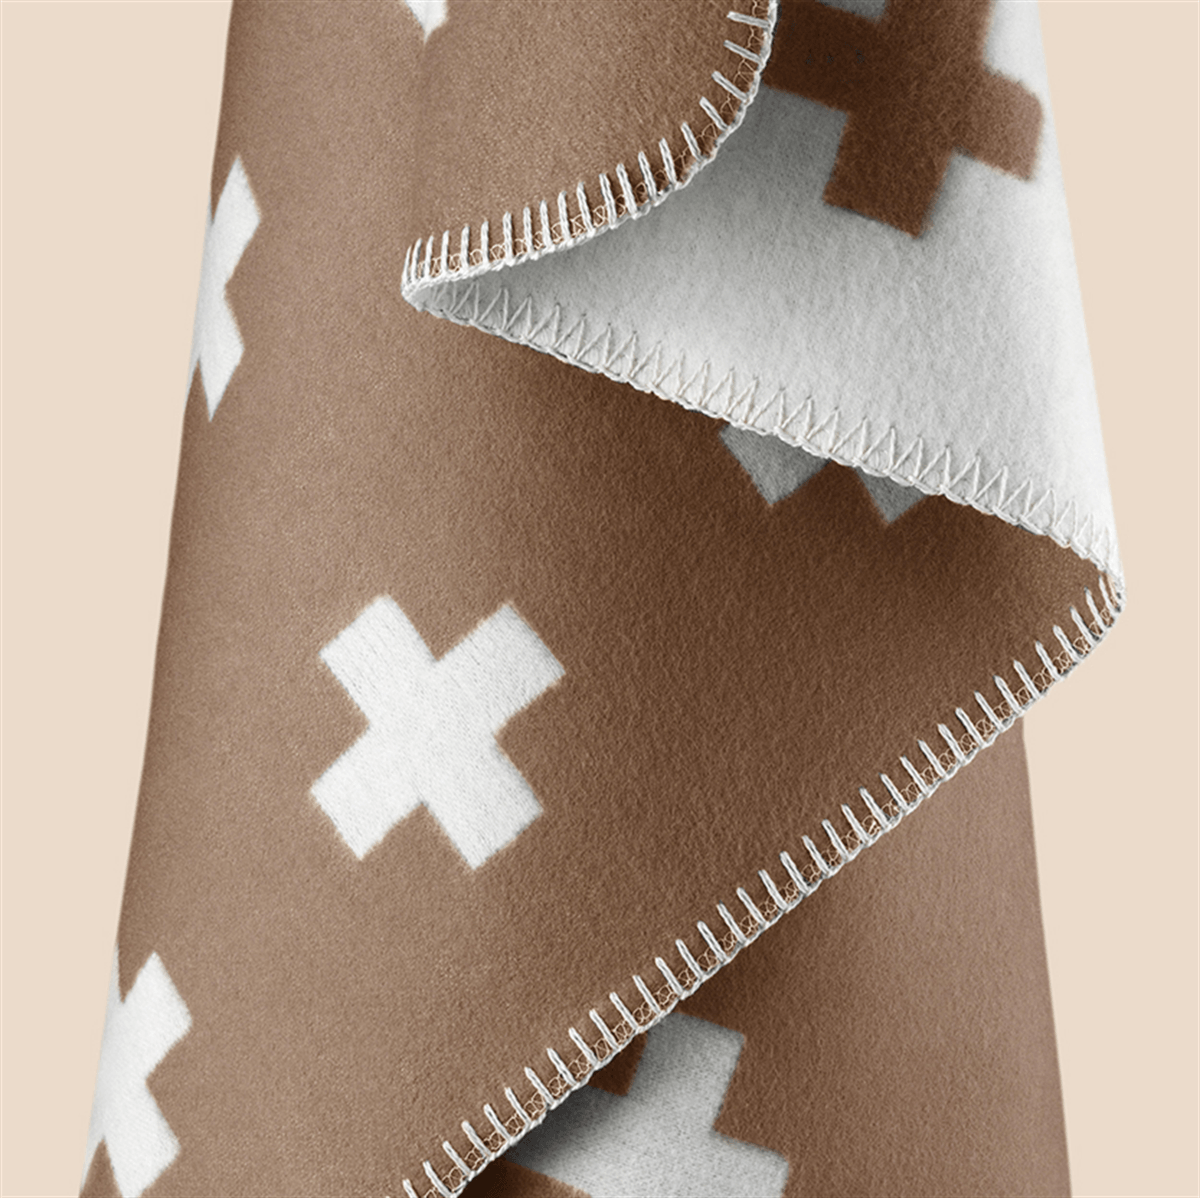 delikatissen textiles nórdicos pia wallen mantas de diseño manta cross iconos diseño sueco diseño sueco 